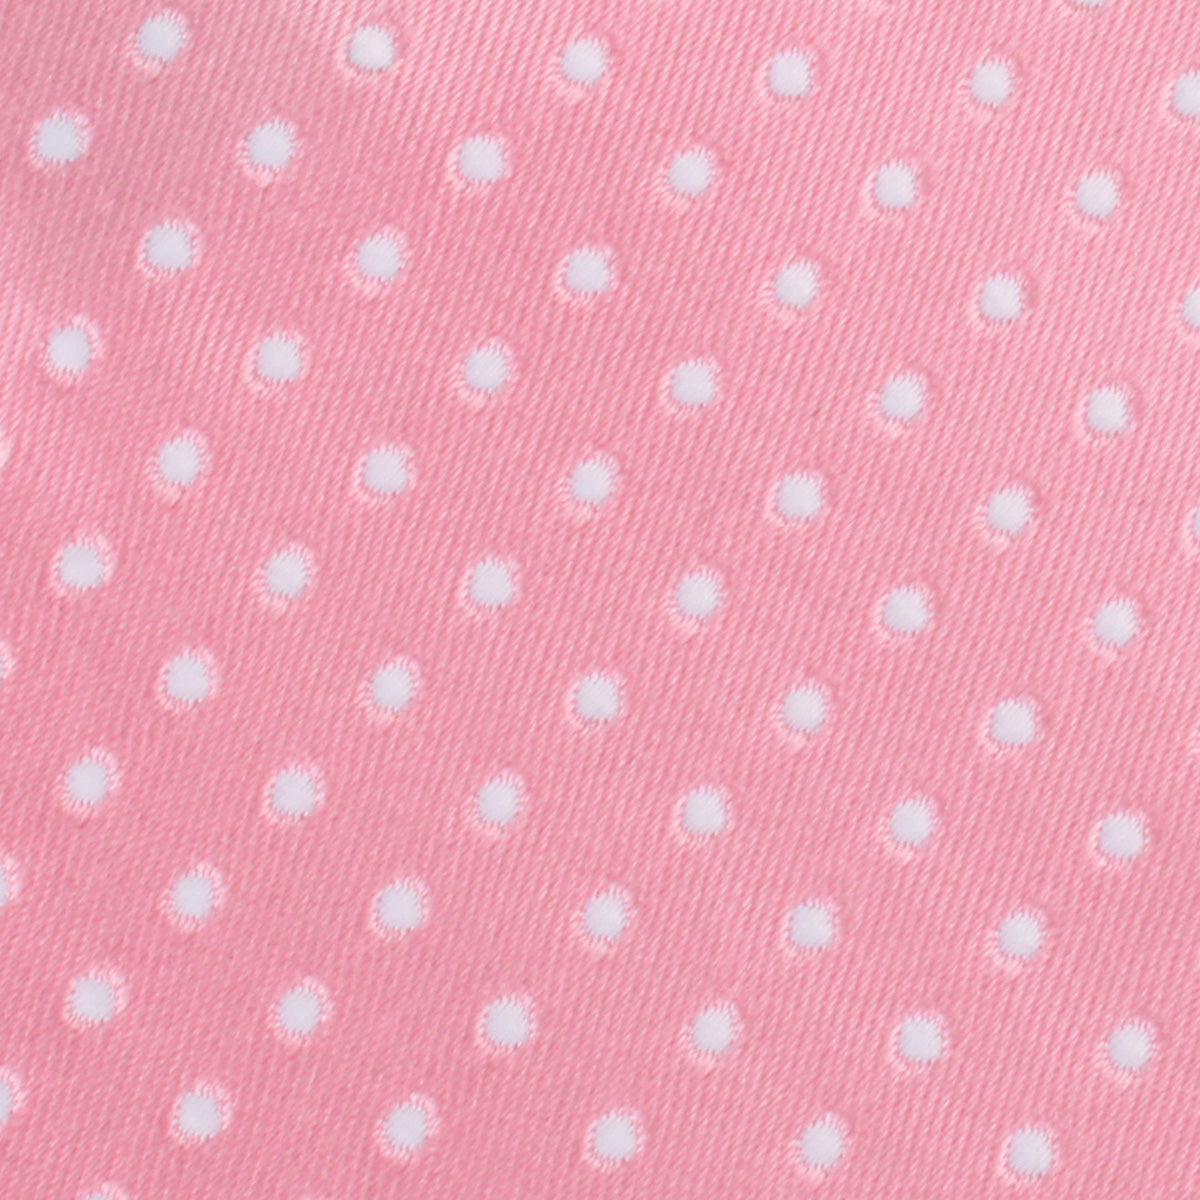 Rose Pink Mini Polka Dots Skinny Tie Fabric